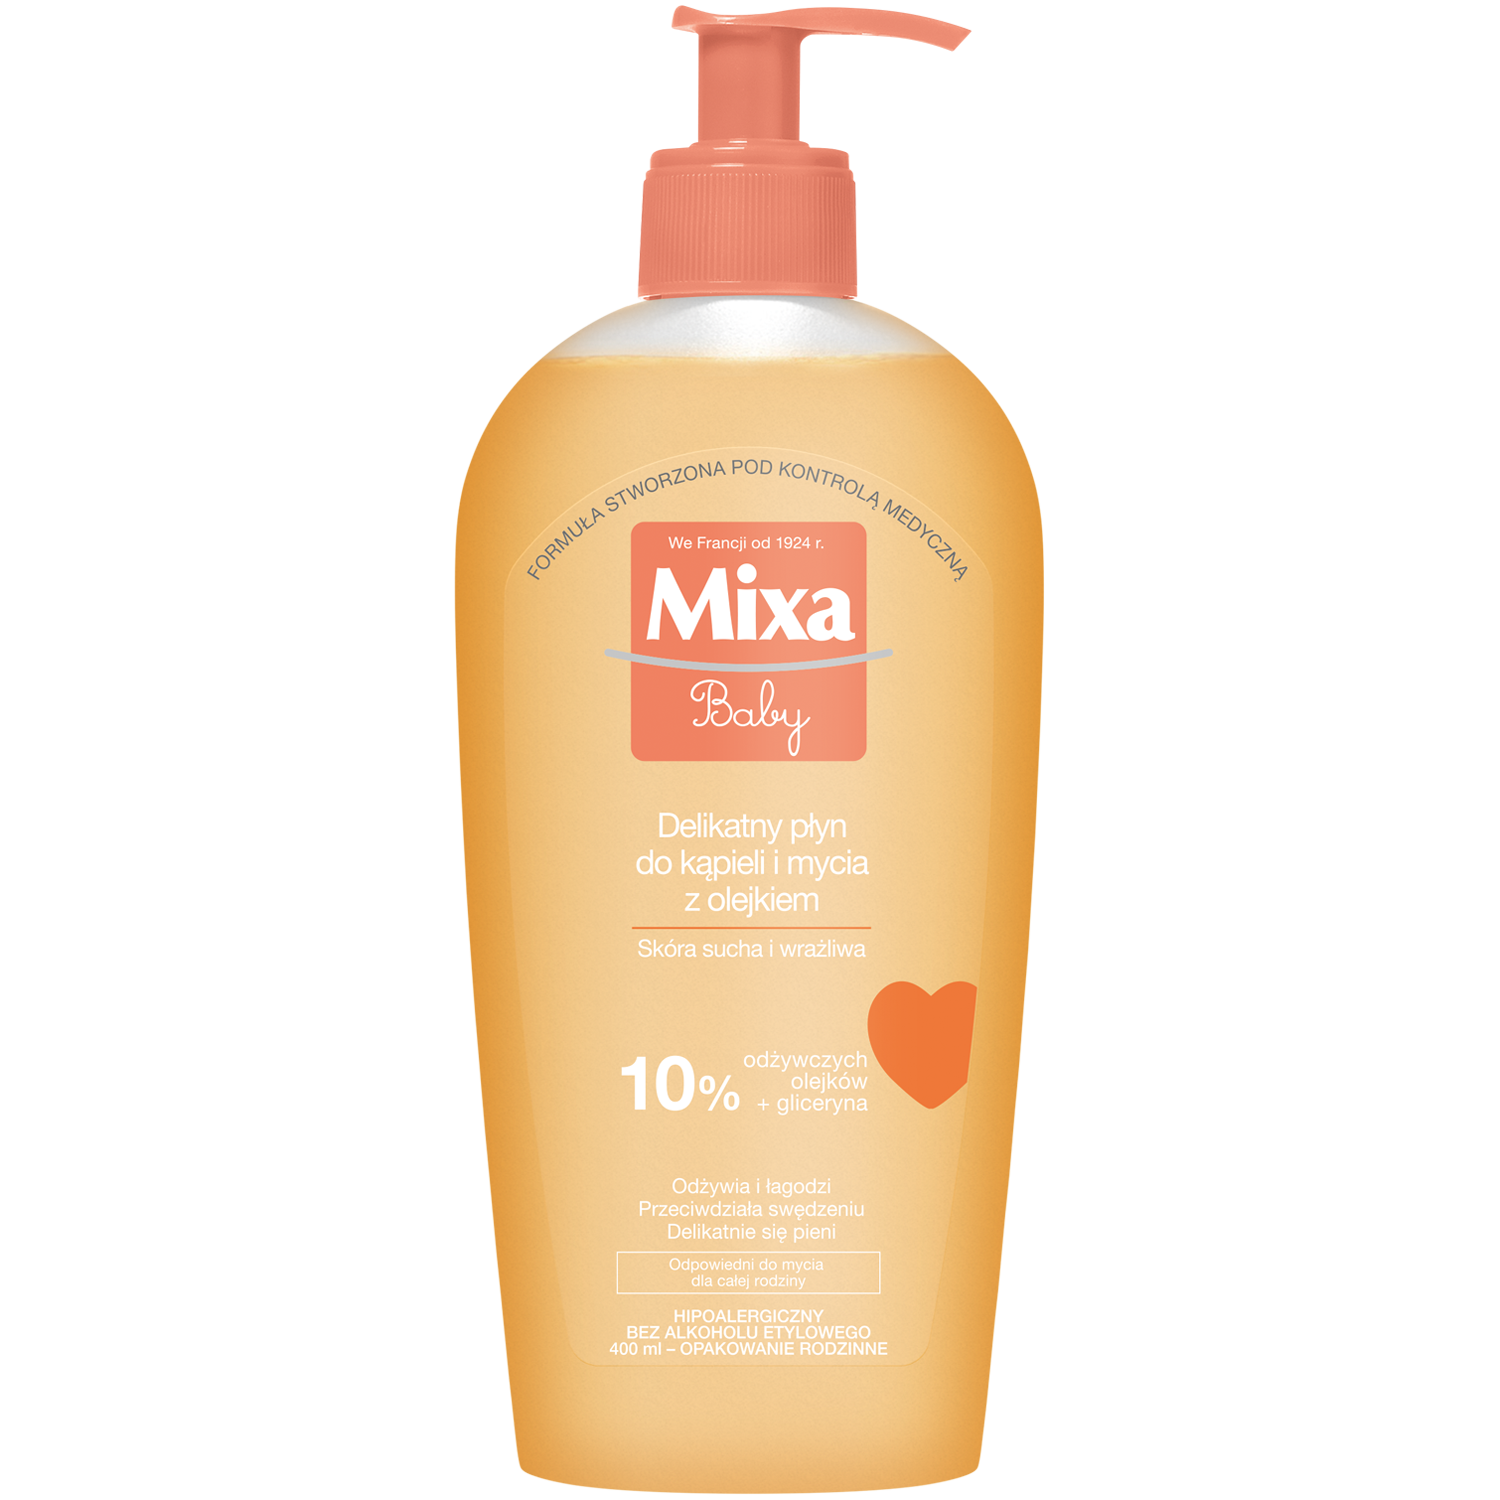 Mixa Baby Жидкость для деликатной стирки с маслом, 400 мл цена и фото